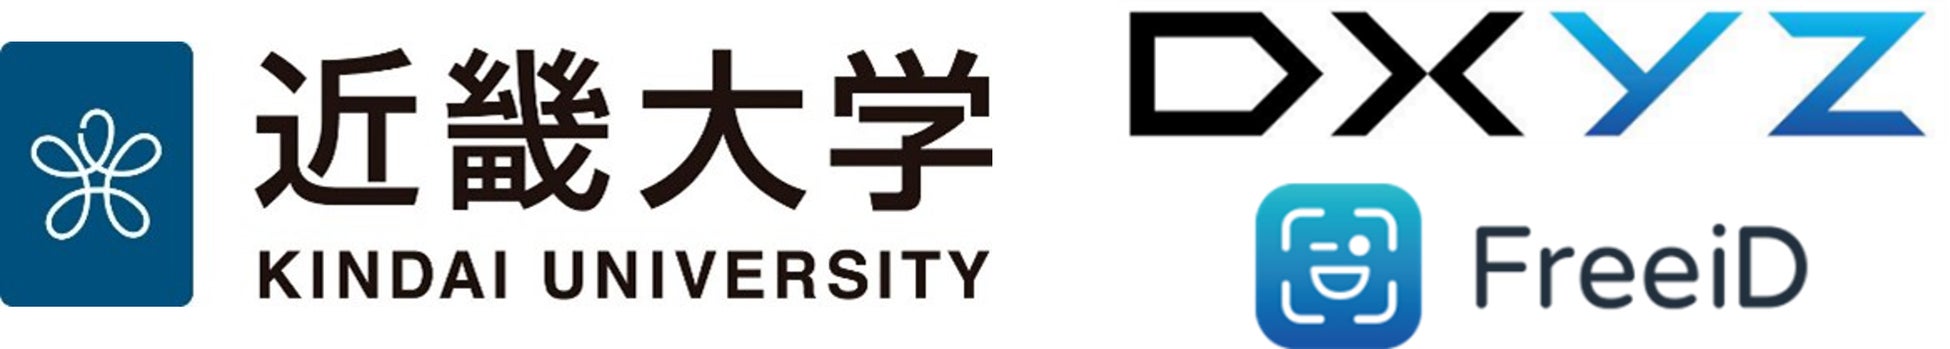 【当社子会社DXYZ】近畿大学の学生向けインキュベーション施設に顔認証システムを導入のサブ画像1